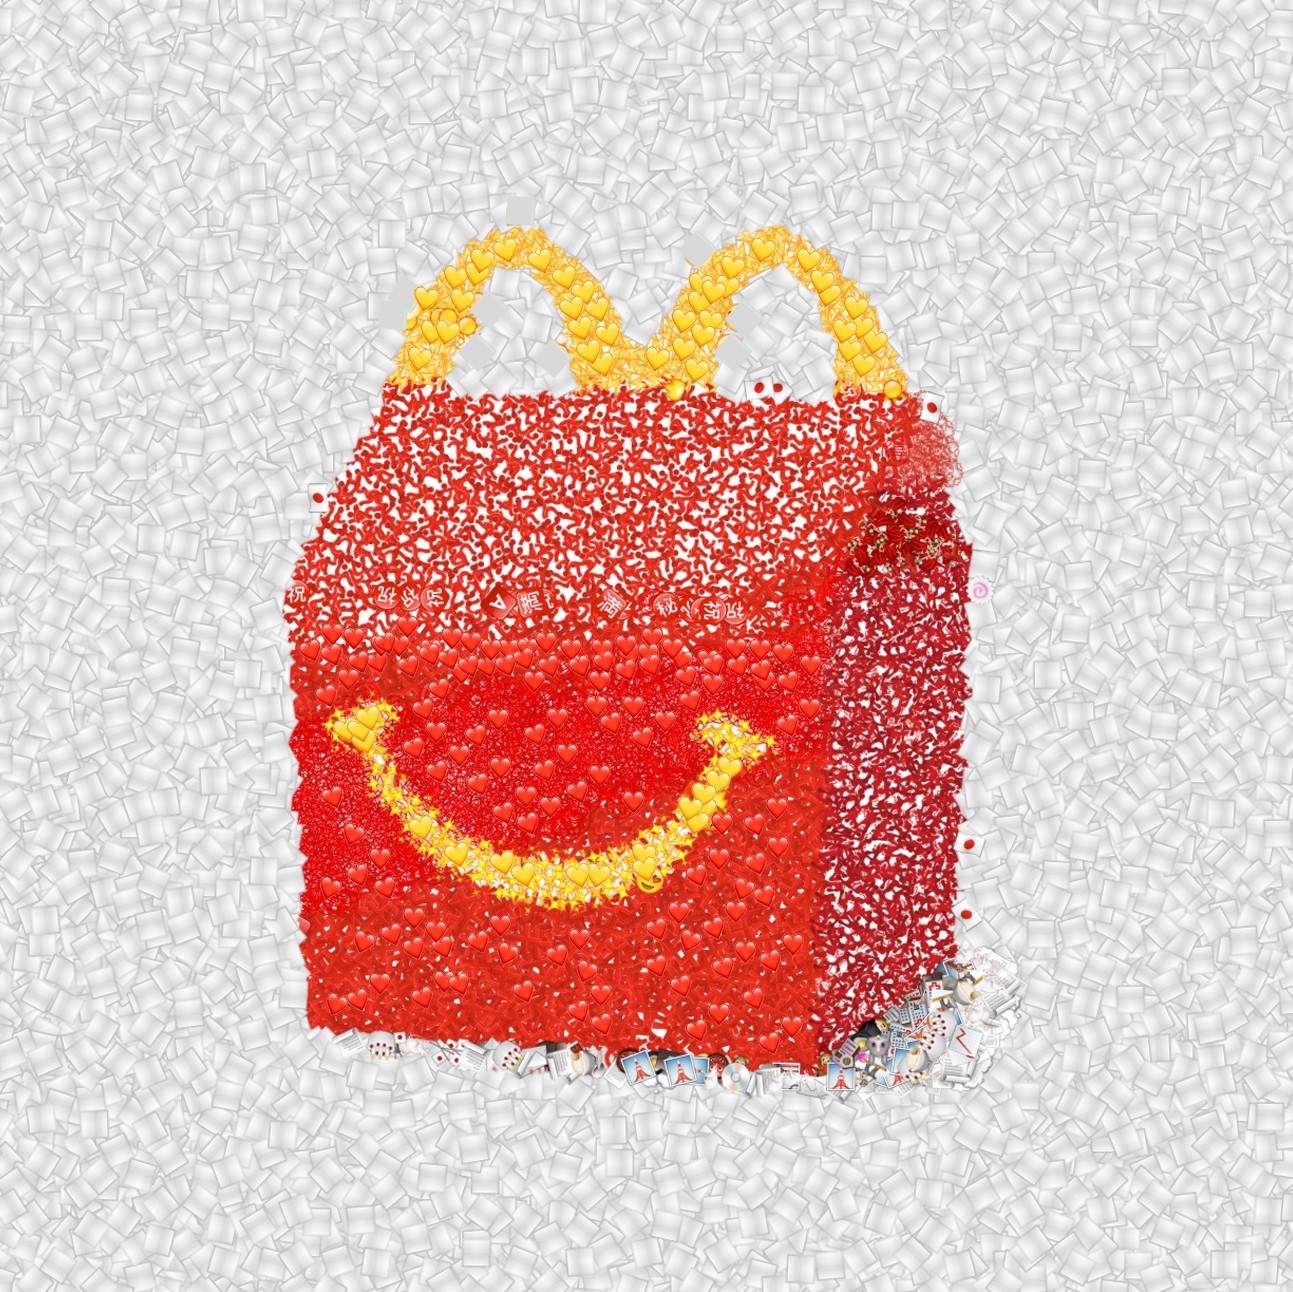 麦当劳创意海报设计：2020年世界表情日(World Emoji Day)